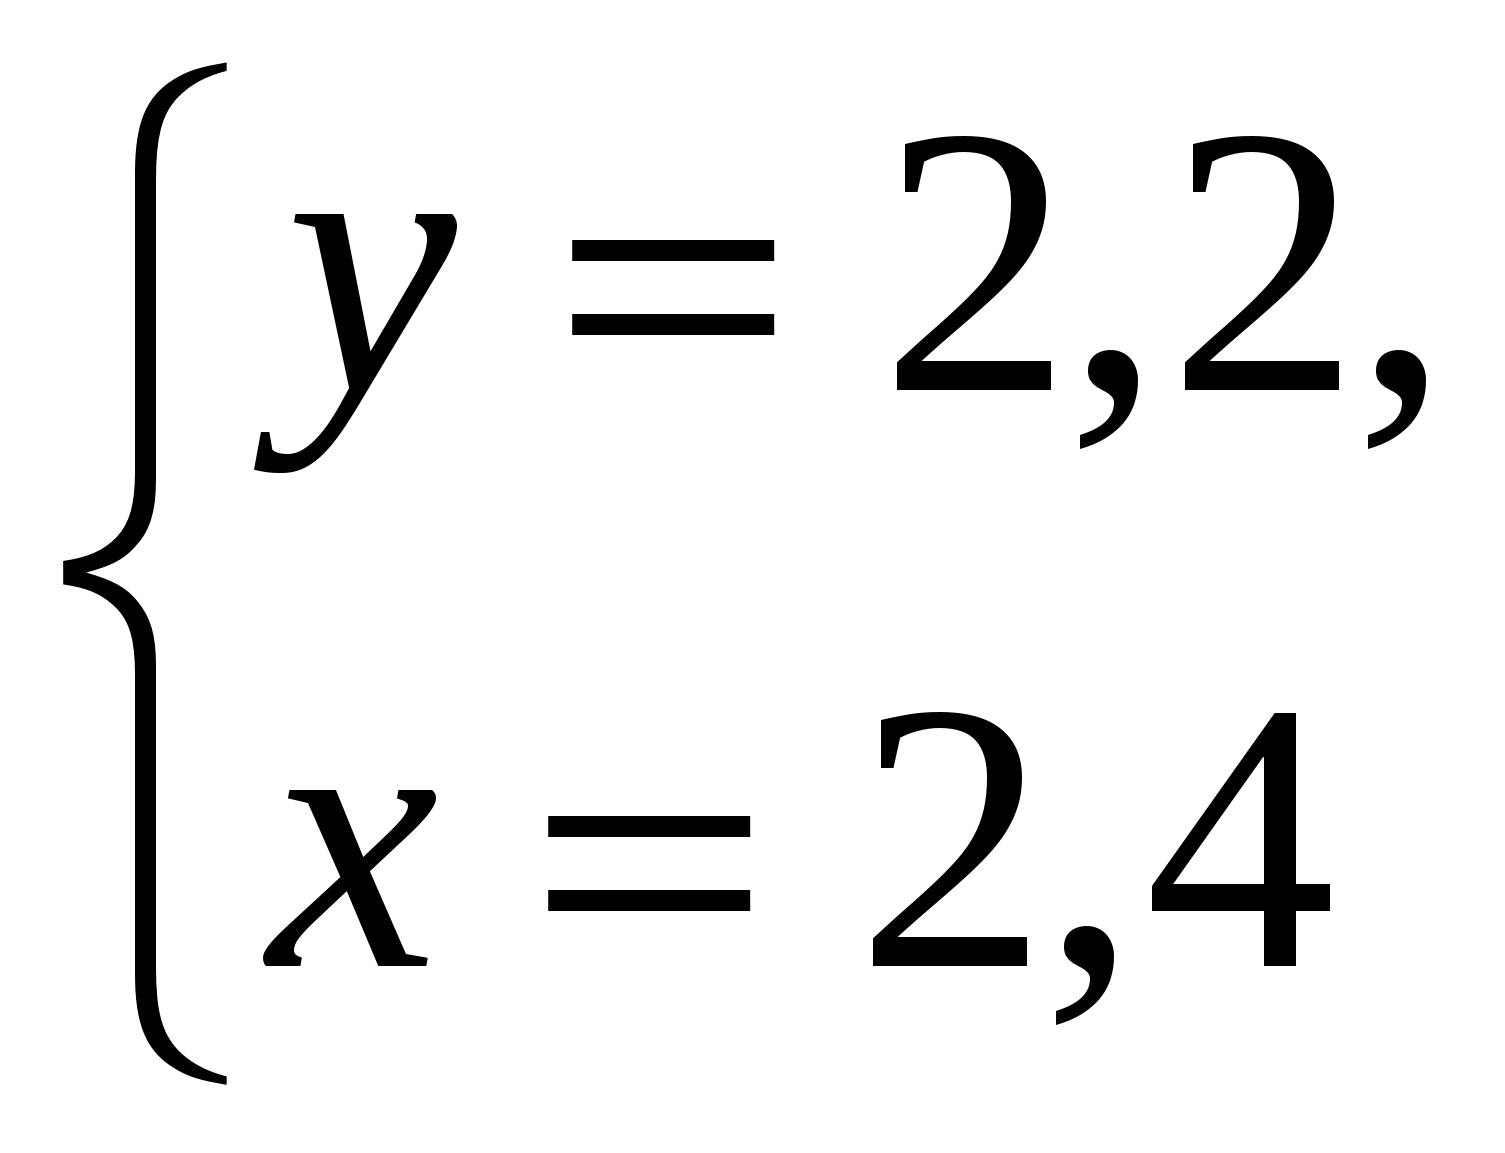 Урок в 7 классе по алгебре на тему: Решение систем линейных уравнений способом подстановки